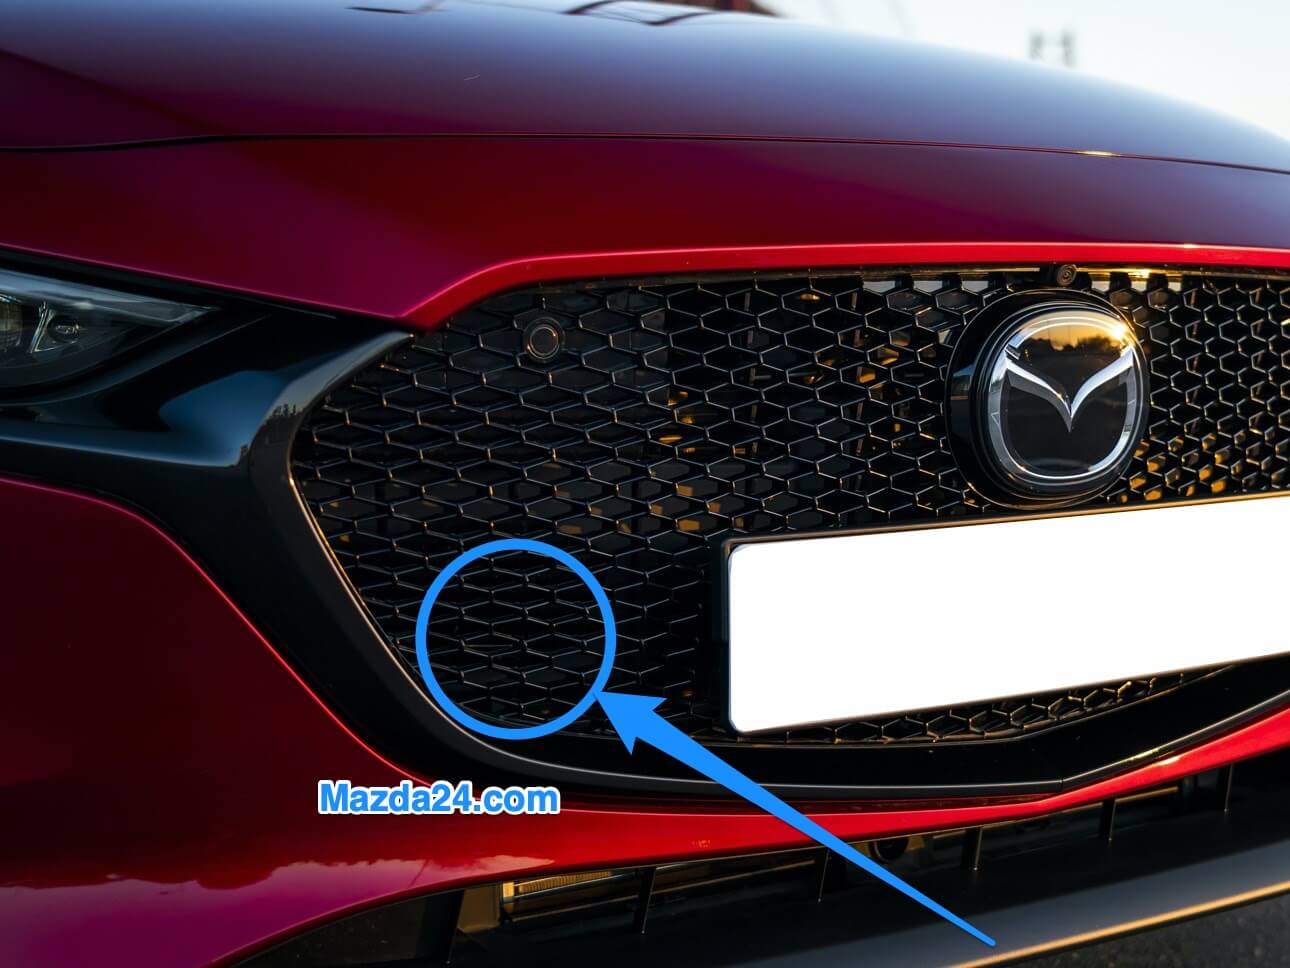 Auto Frontscheibenabdeckung für Mazda 2 Hatchback 2005-2019 2020